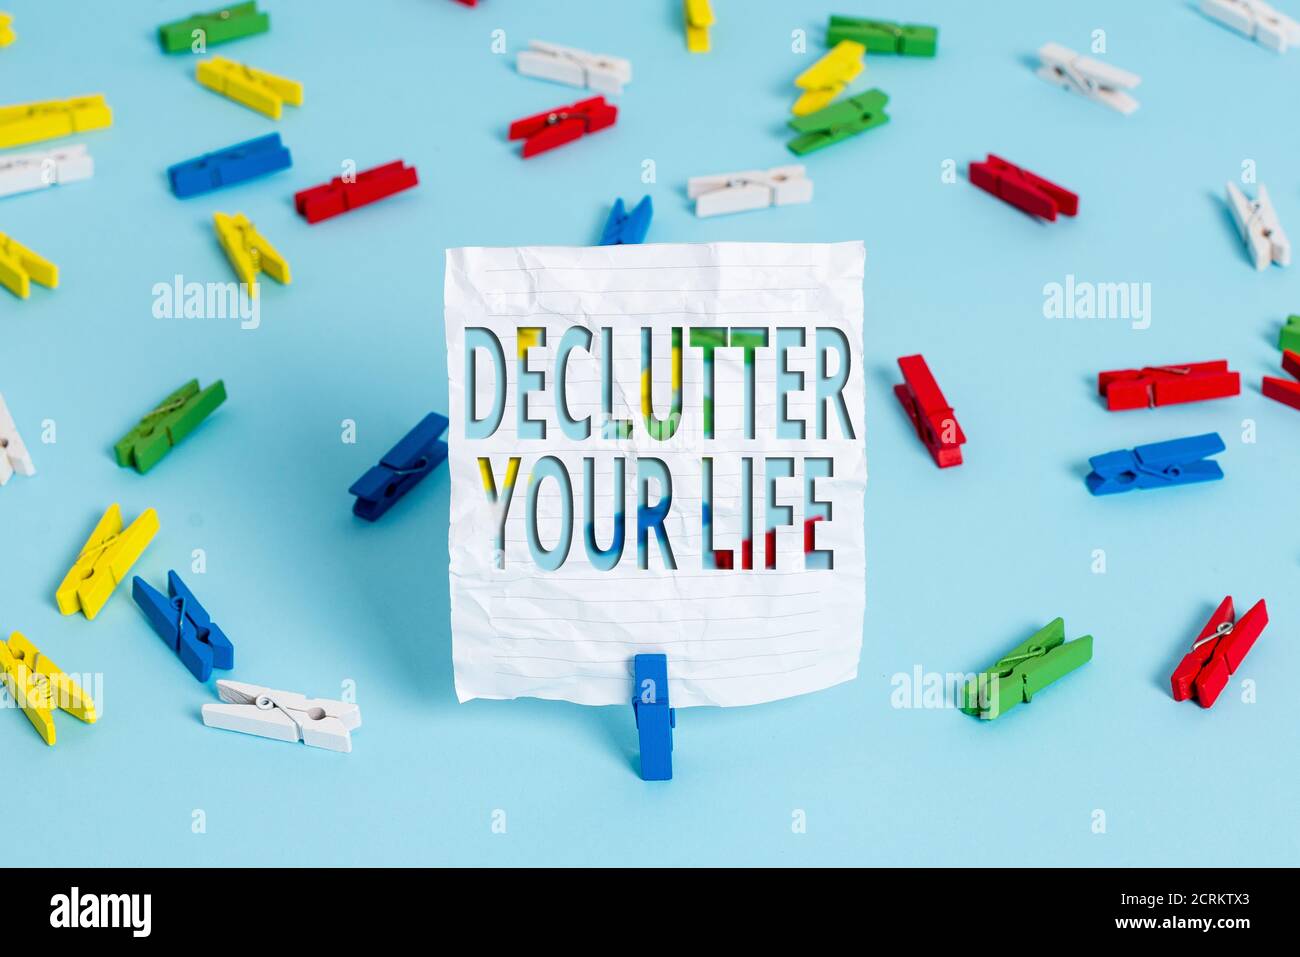 Schreibnotiz zeigt Declutter Your Life. Geschäftskonzept zur Beseitigung von Fremdsachen oder Informationen im Leben farbige Wäscheklammer Papiere leer r Stockfoto